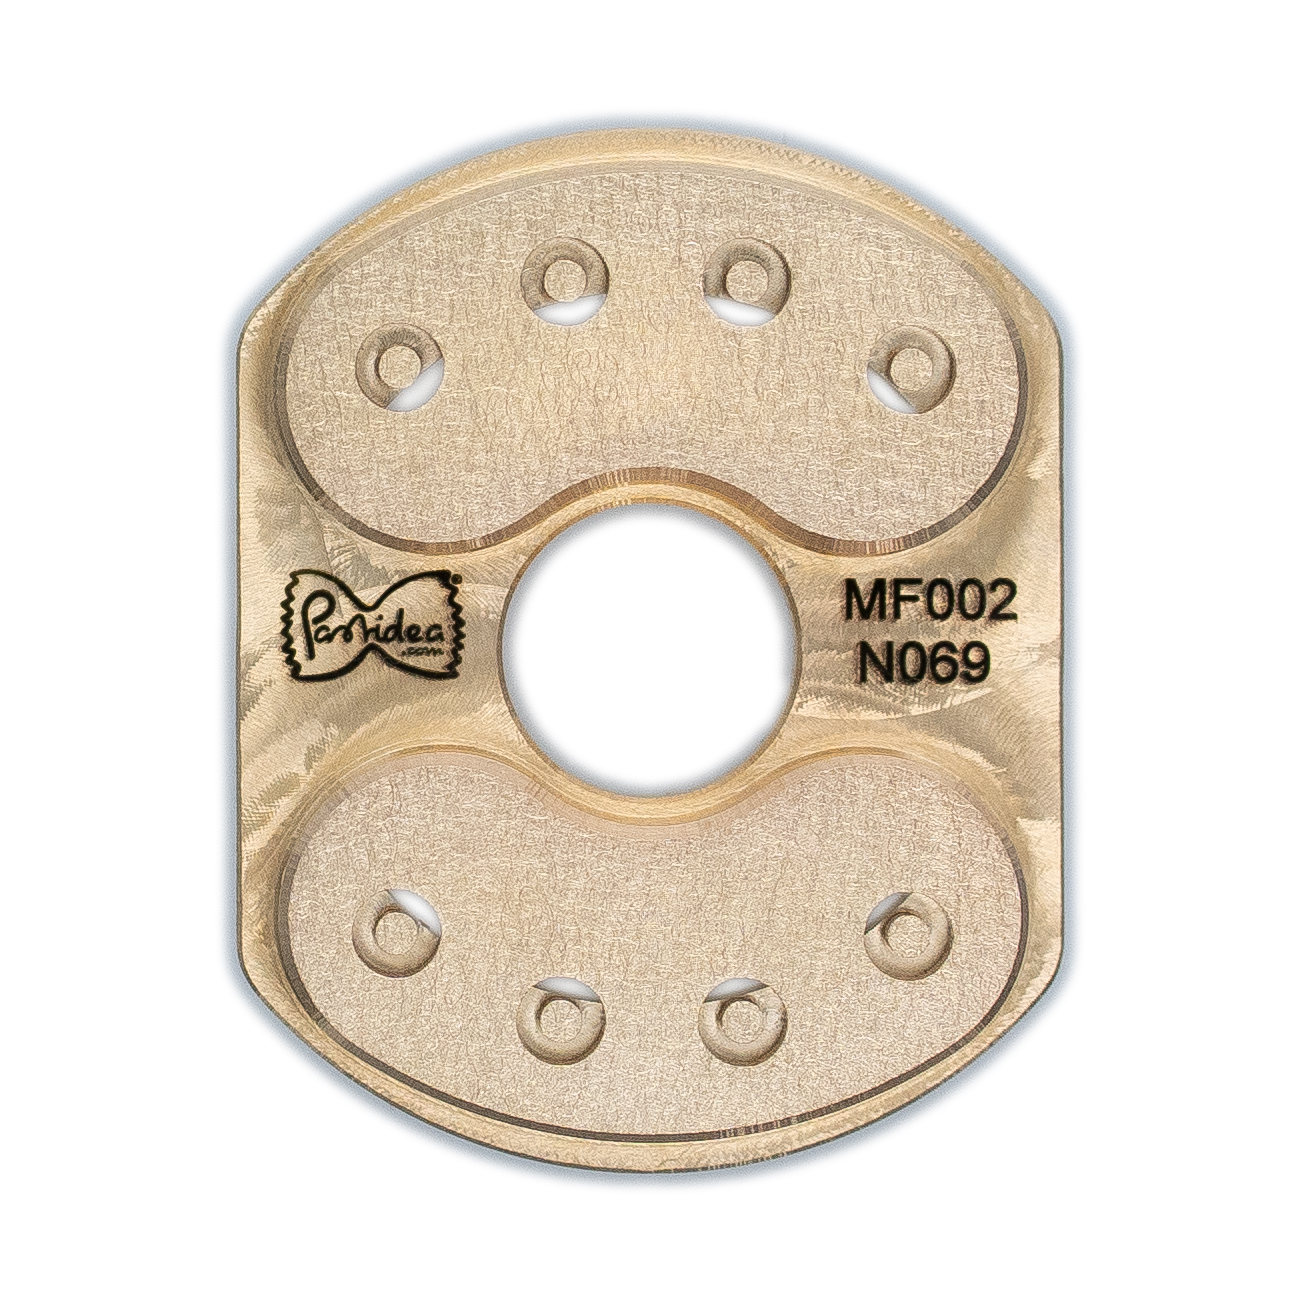 inserto para pasta (tipo 2) en bronce funghi 10 mm para máquina para hacer pasta philips avance / serie 7000 (se requiere soporte para inserto)